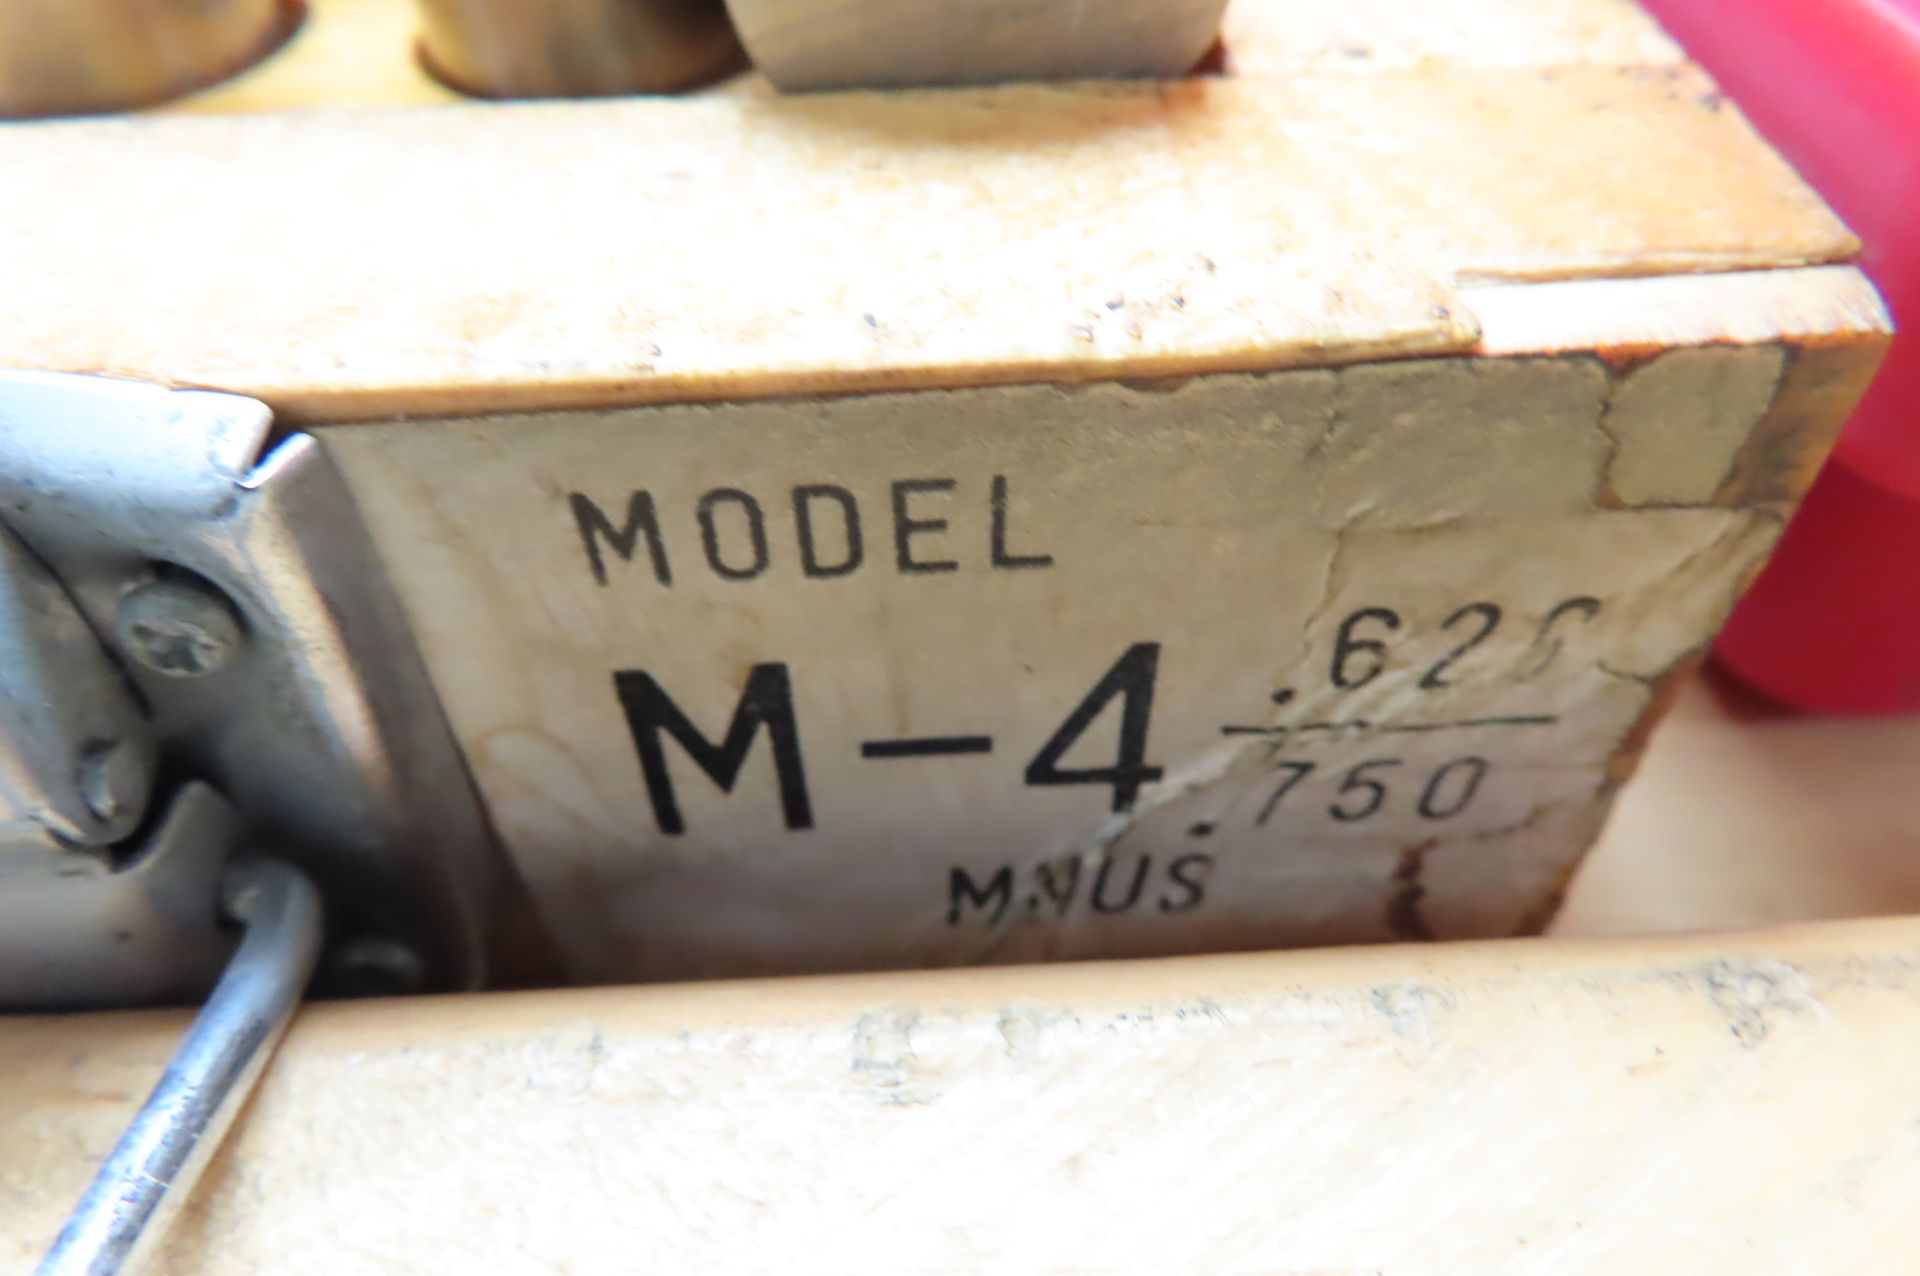 M-4 MINUS PIN GAGE SET 0.626 - 0.750 - Image 3 of 3